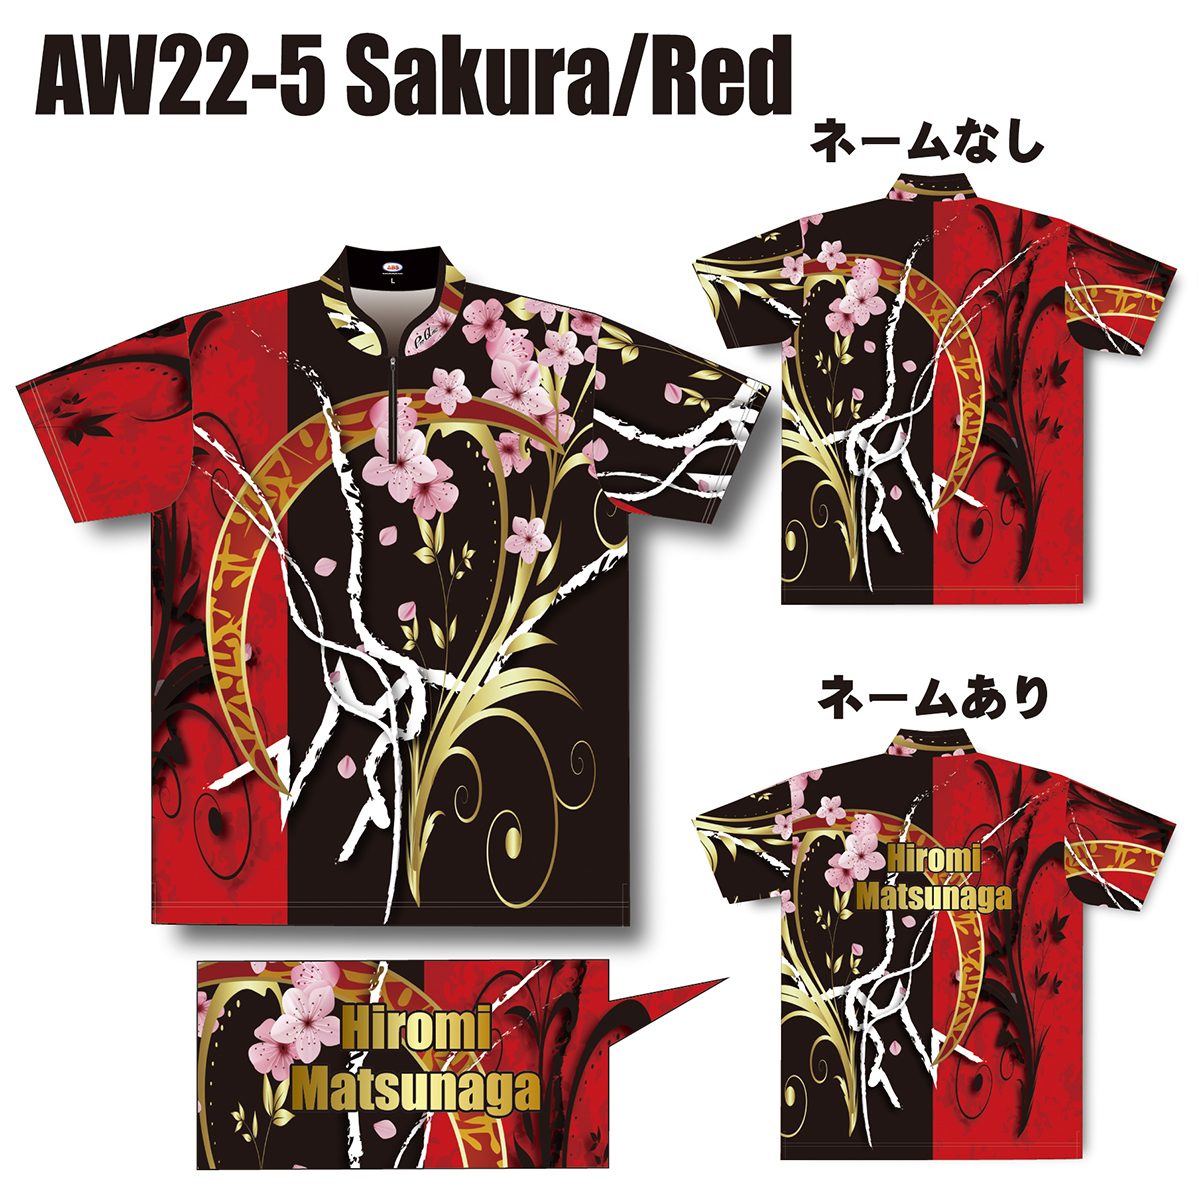 2022スプリングモデル(AW22-5 Sakura/Red)